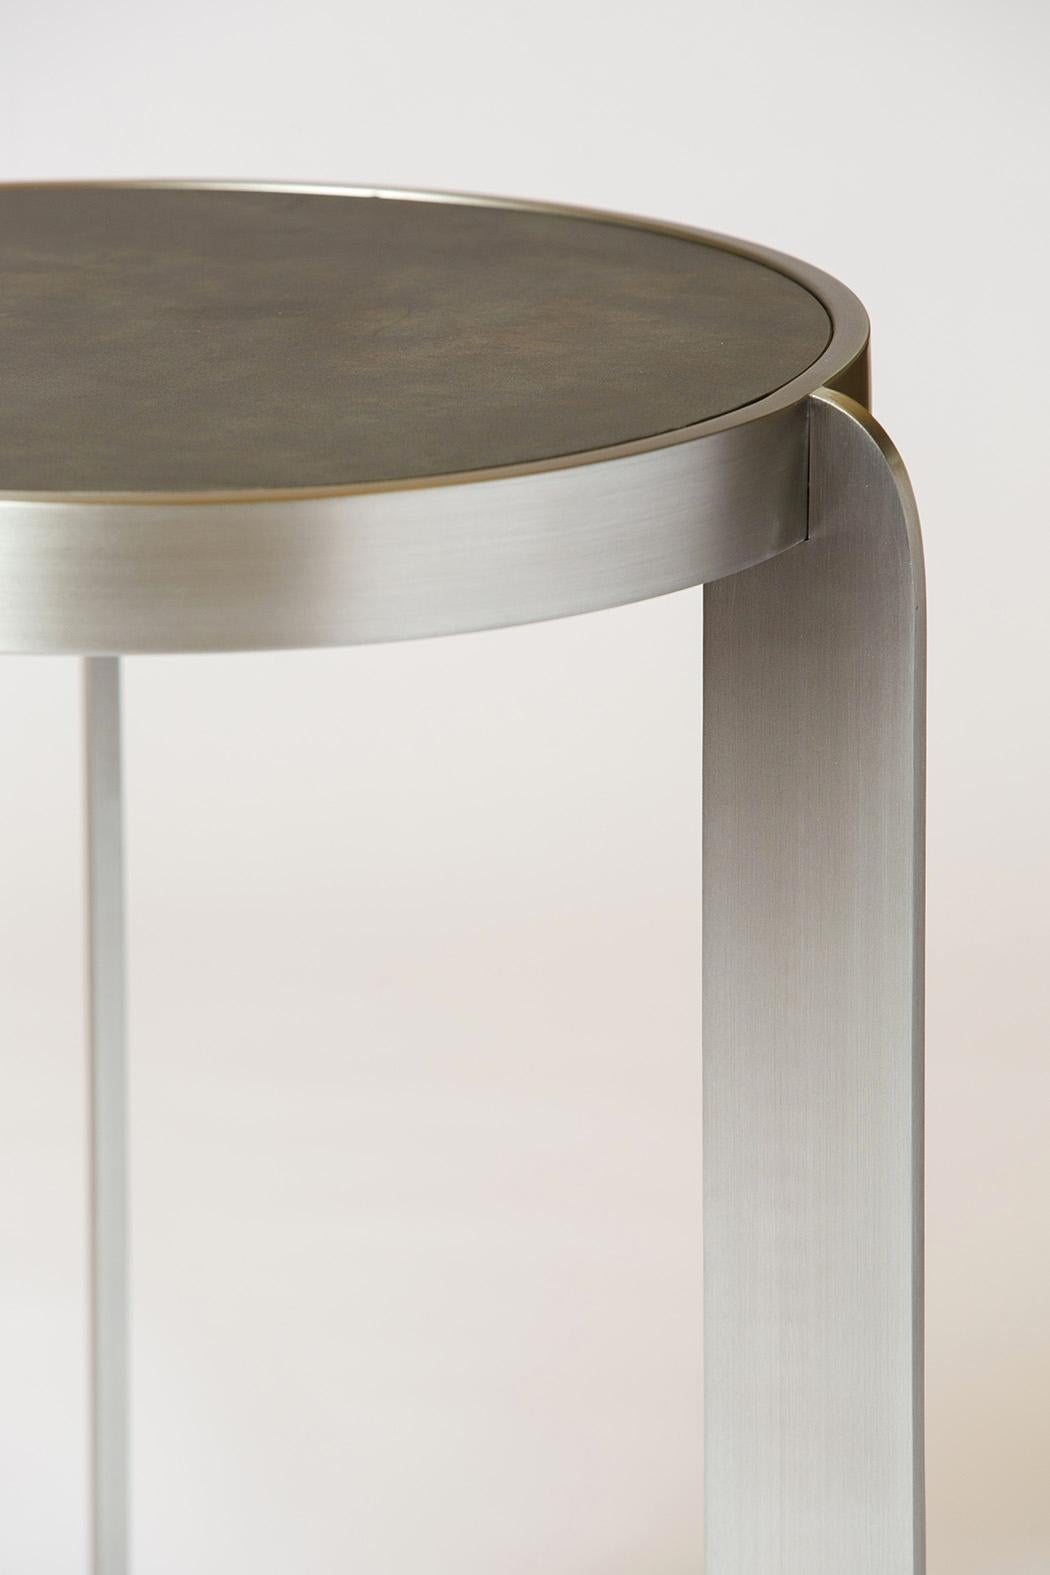 La table d'appoint Materico est définie par une simplicité sophistiquée qui crée un objet inattendu et emblématique. Les suggestions énigmatiques de ses sculptures en céramique sont également révélées dans les formes du Materico, où des matériaux